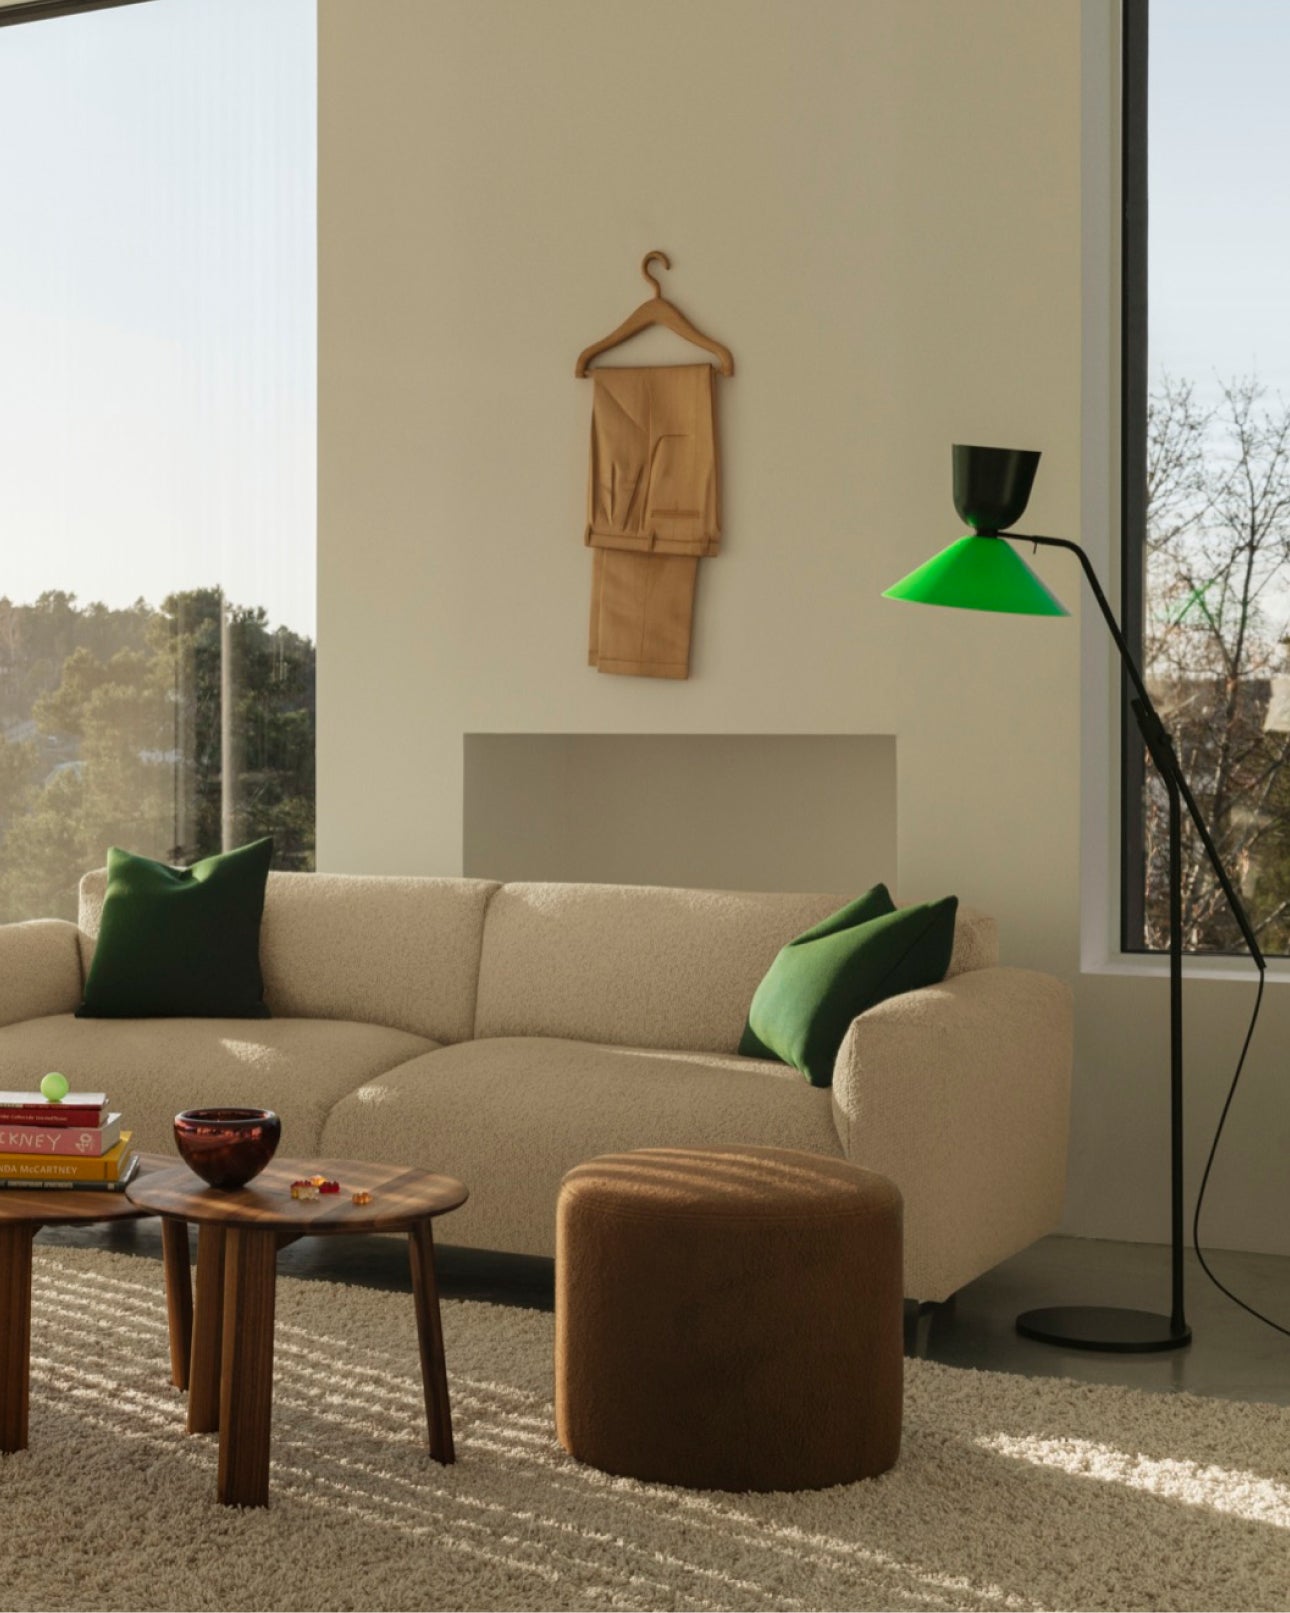 Living room scene featuring the Alphabeta Floor Lamp